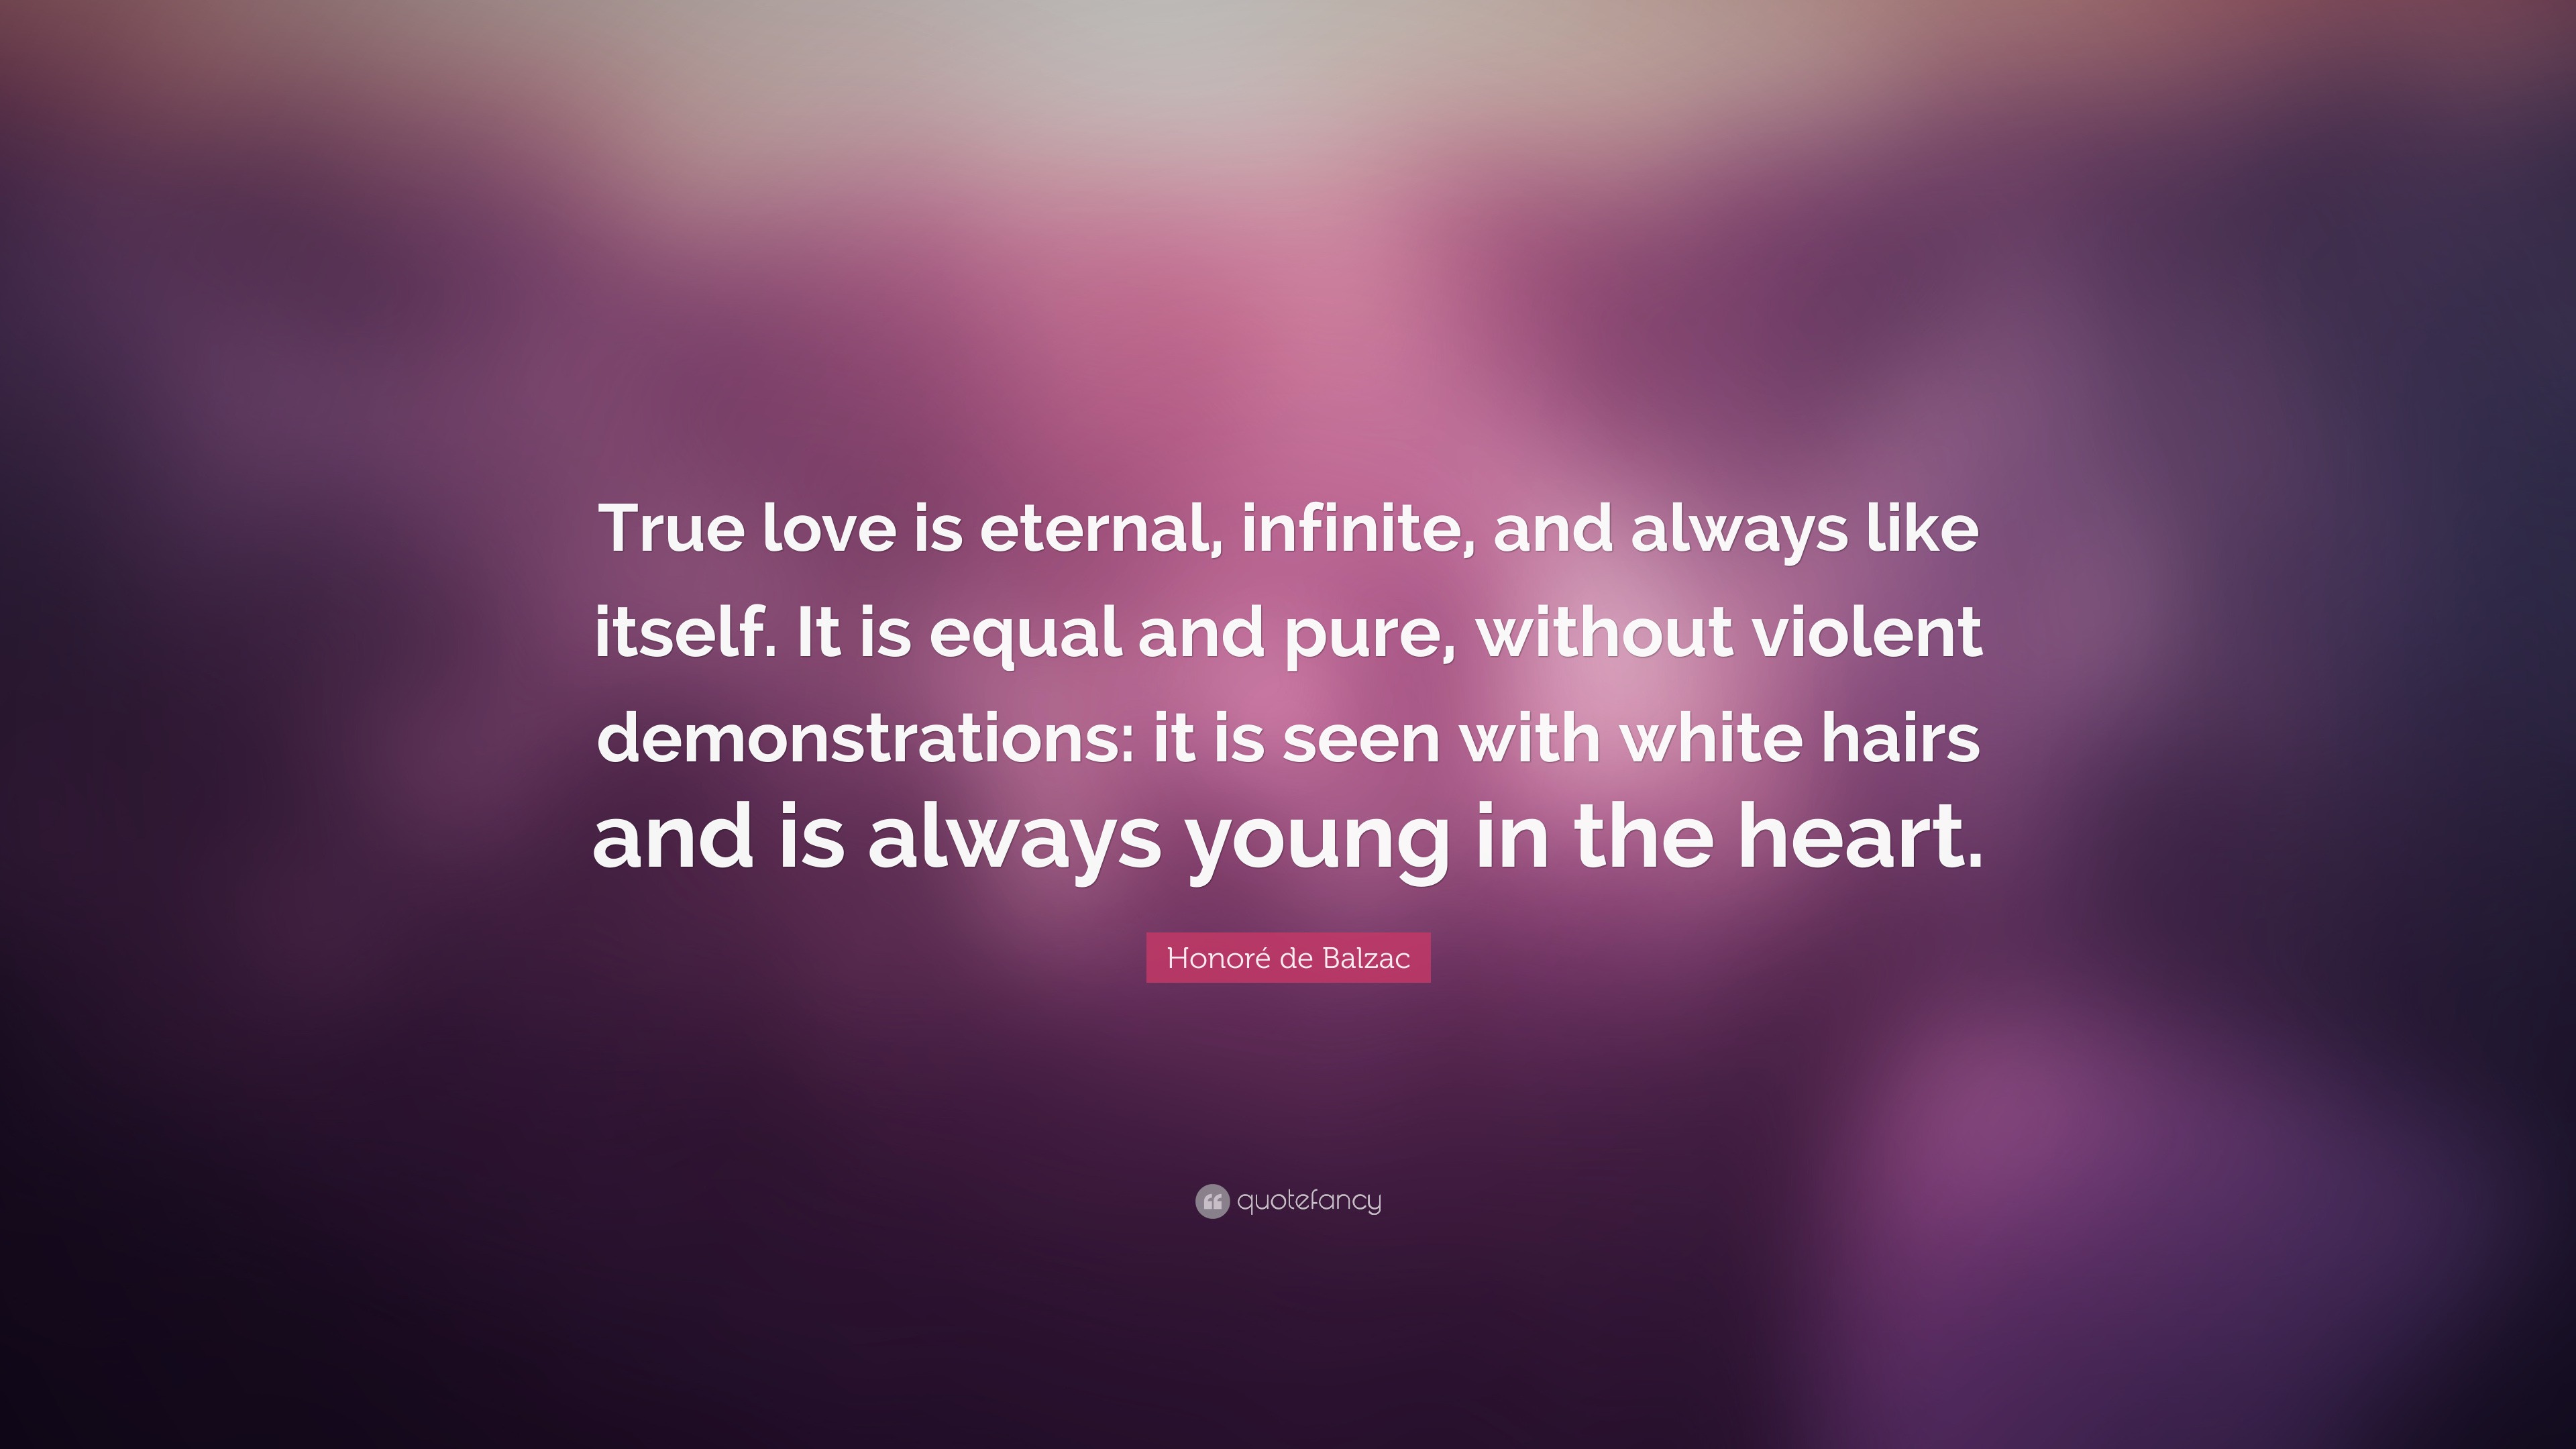 Honore de Balzac - True love is eternal, infinite, and